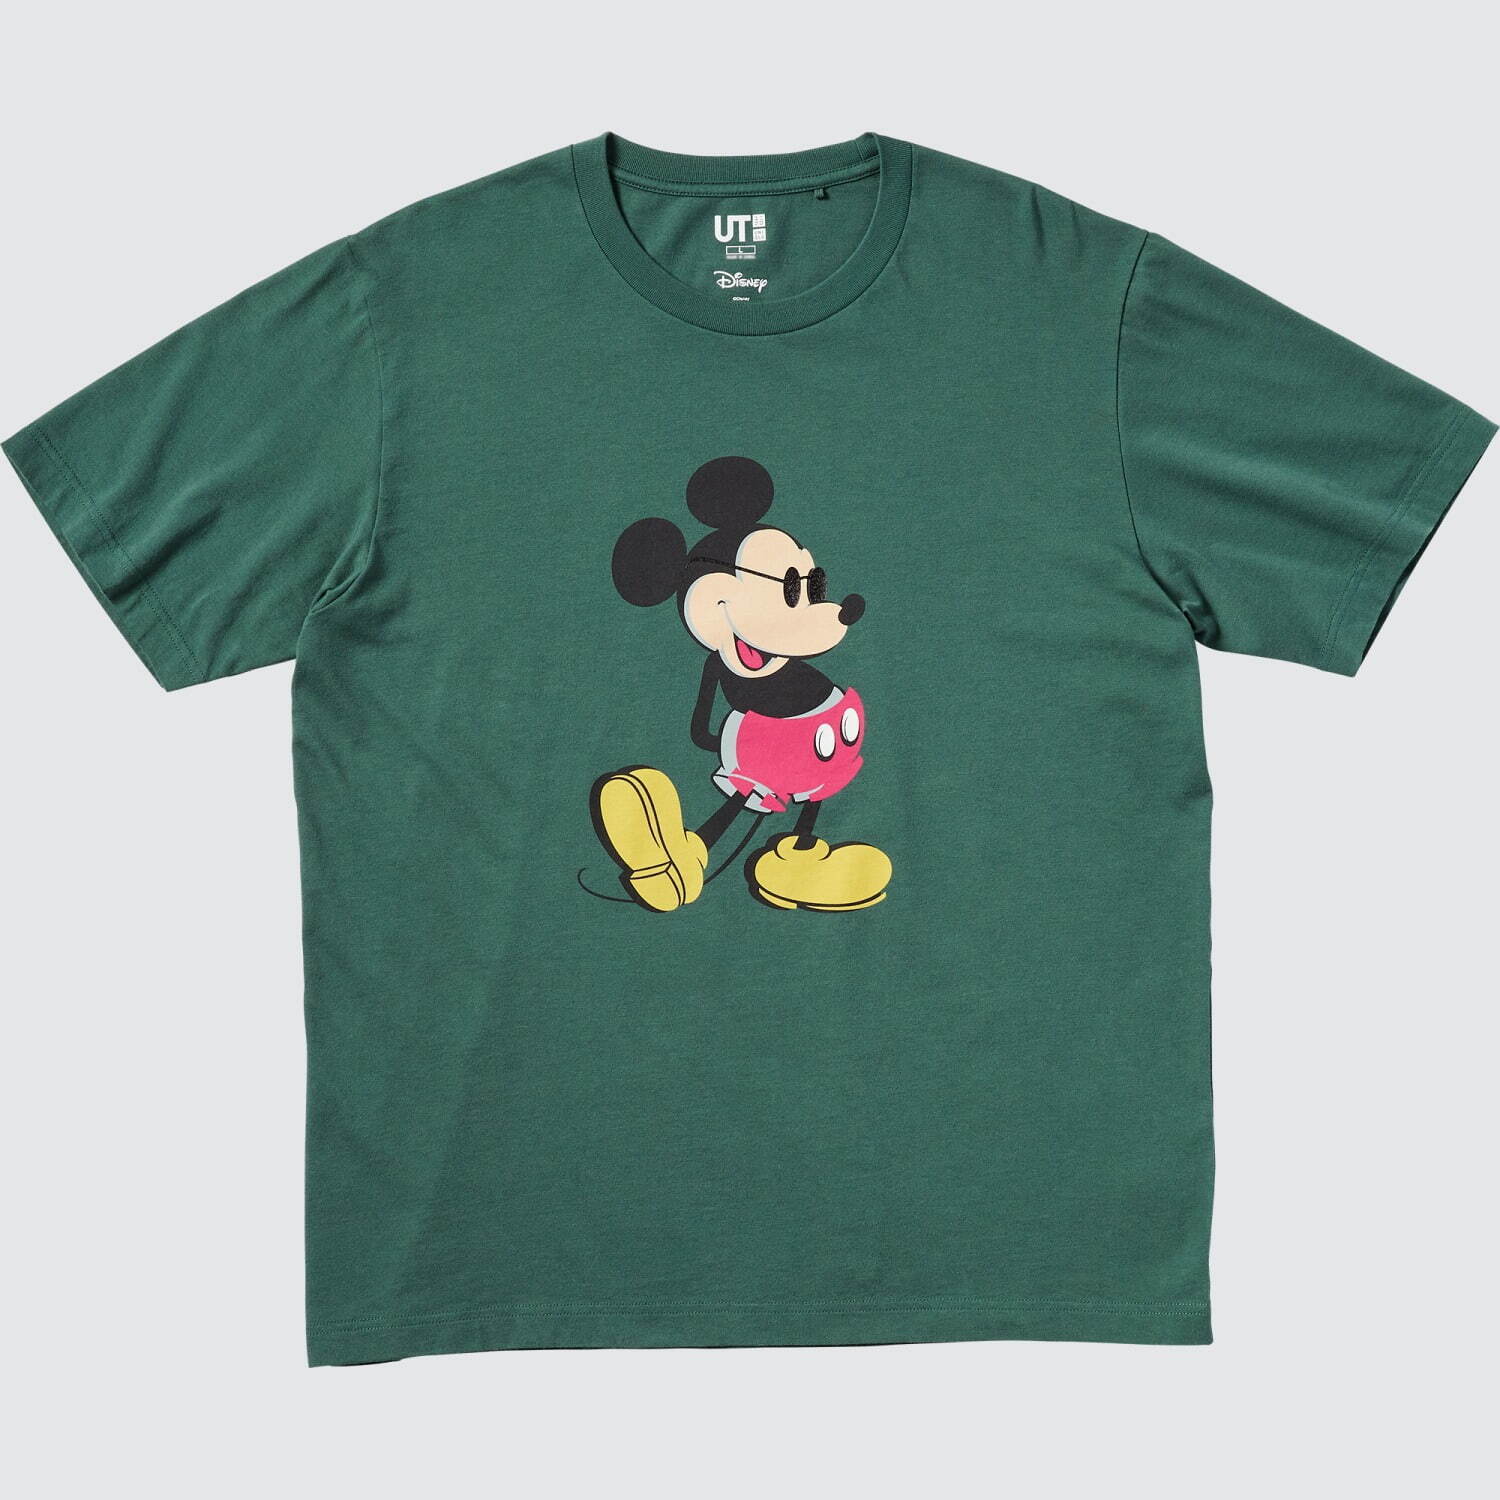 ユニクロ Ut ディズニー ミッキーマウス Tシャツ スタンディングポーズ を描く全24柄 ファッションプレス